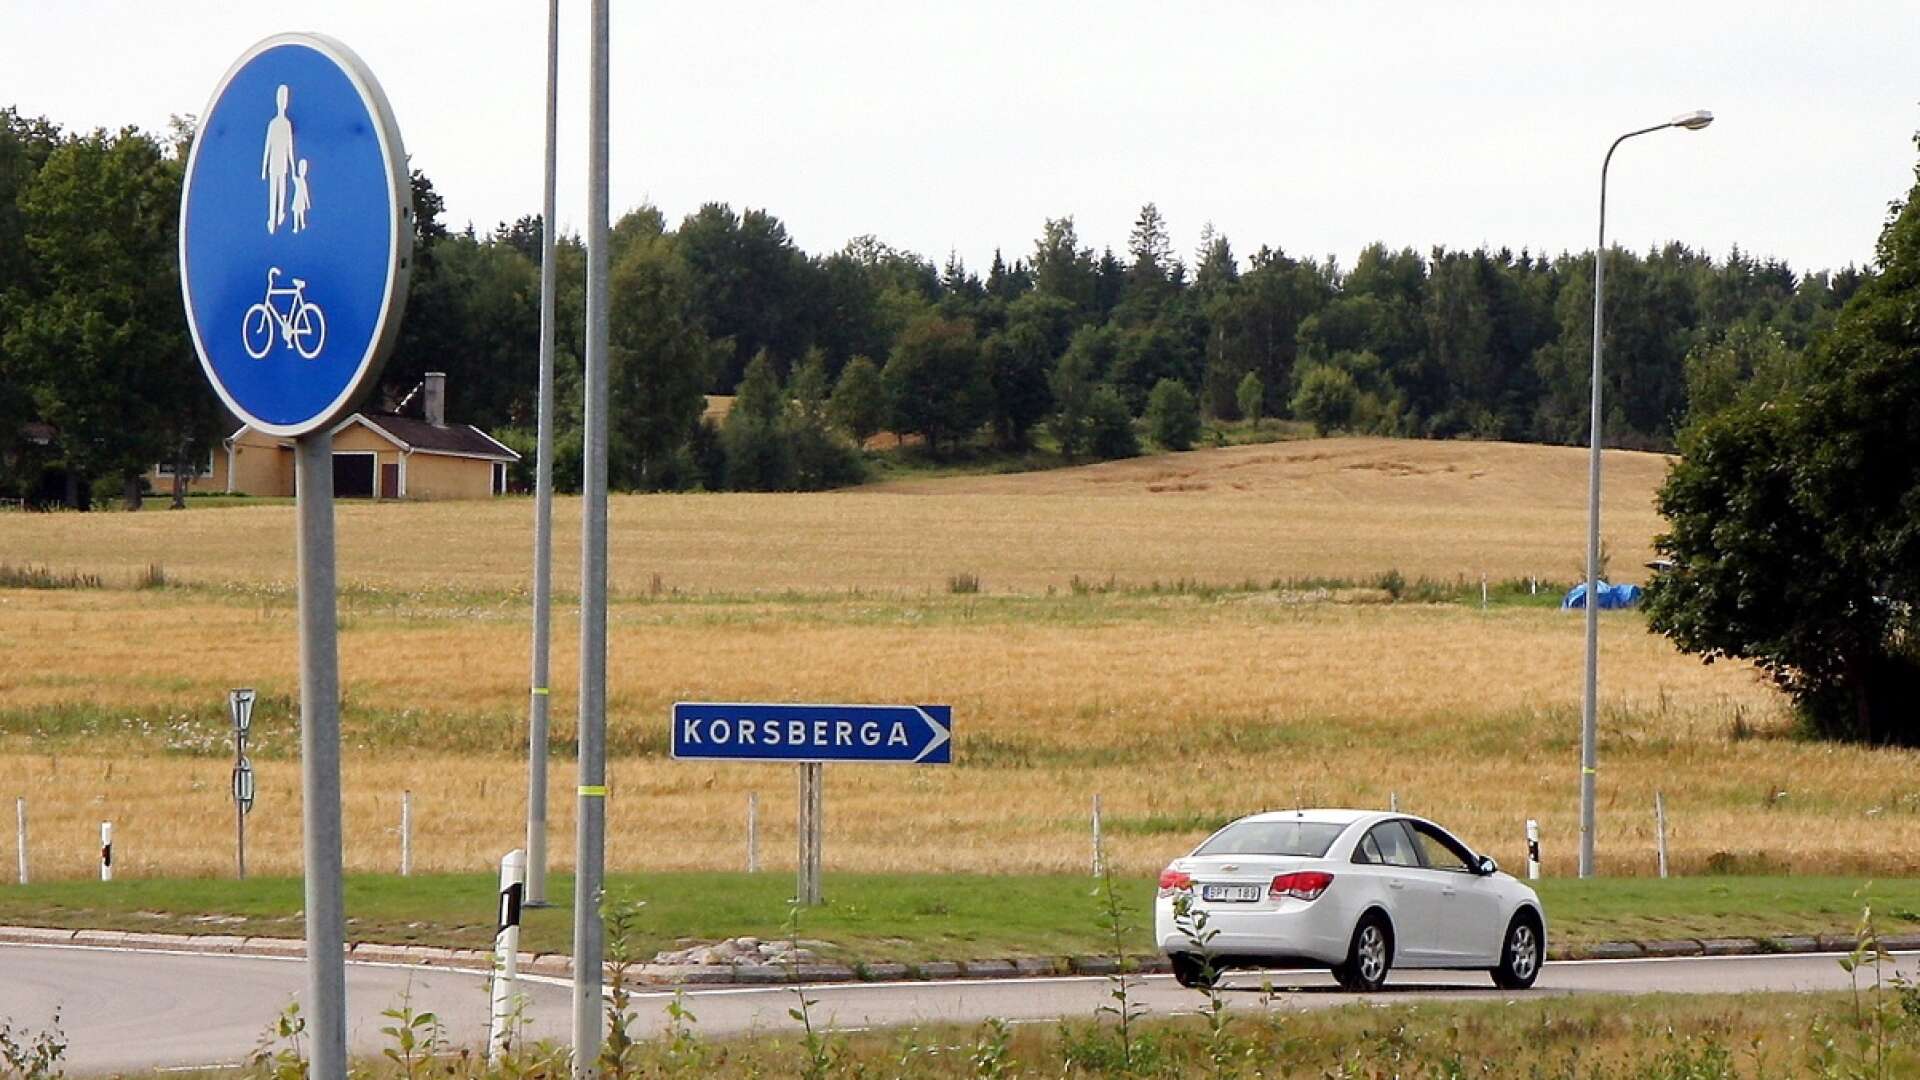 Vägen västerut från Hjo till Korsberga behöver få ökad status av Trafikverket, anser Hjo kommun. En åtgärdsvalsstudie håller på att arbetas fram och kommunen har fått ta del av ett första utkast.